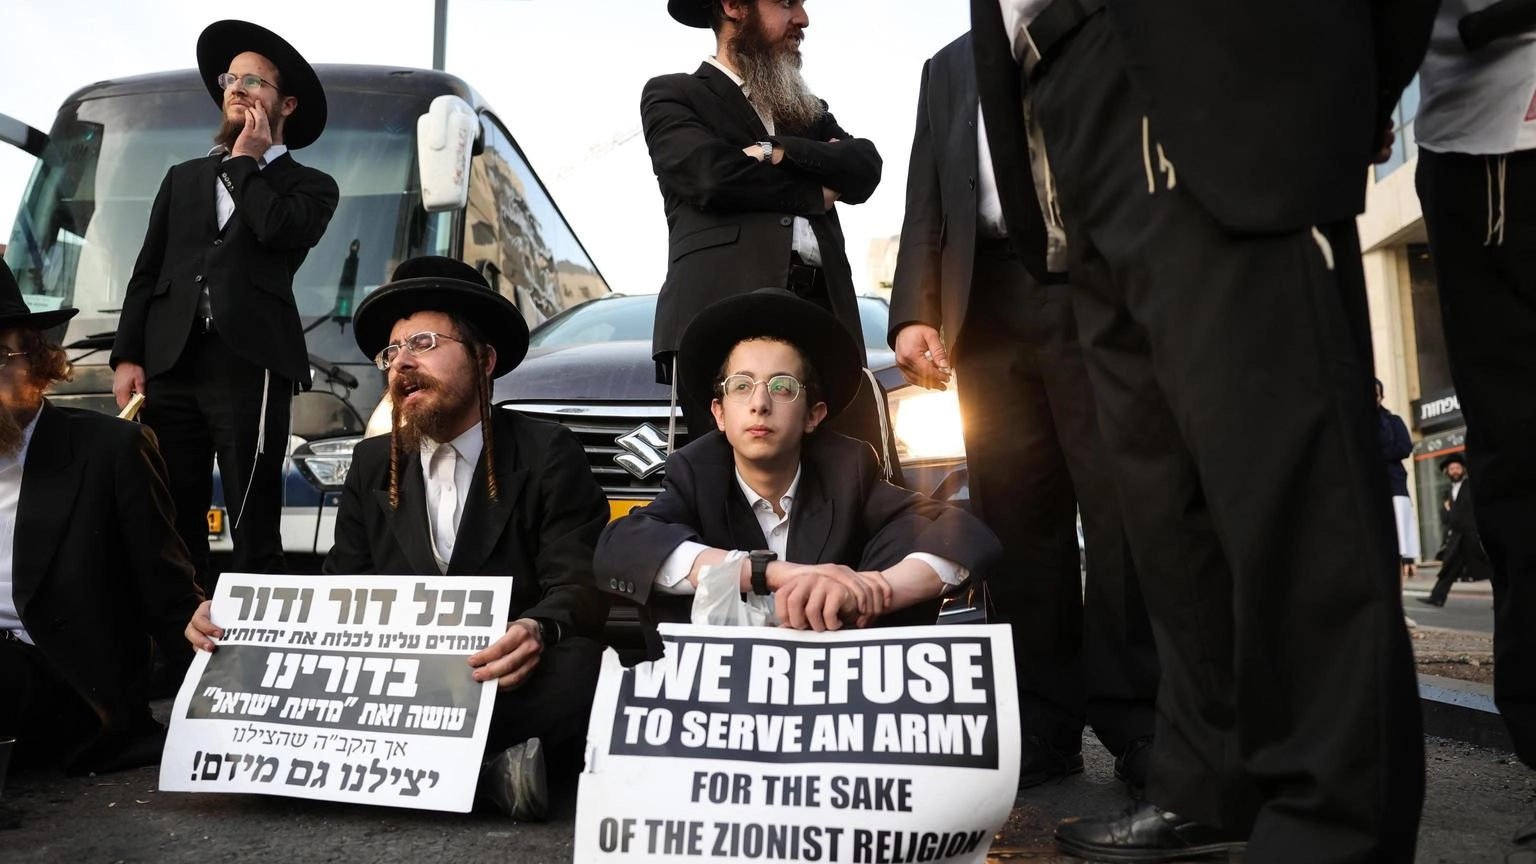 Corte Israele, governo deve arruolare i giovani ortodossi